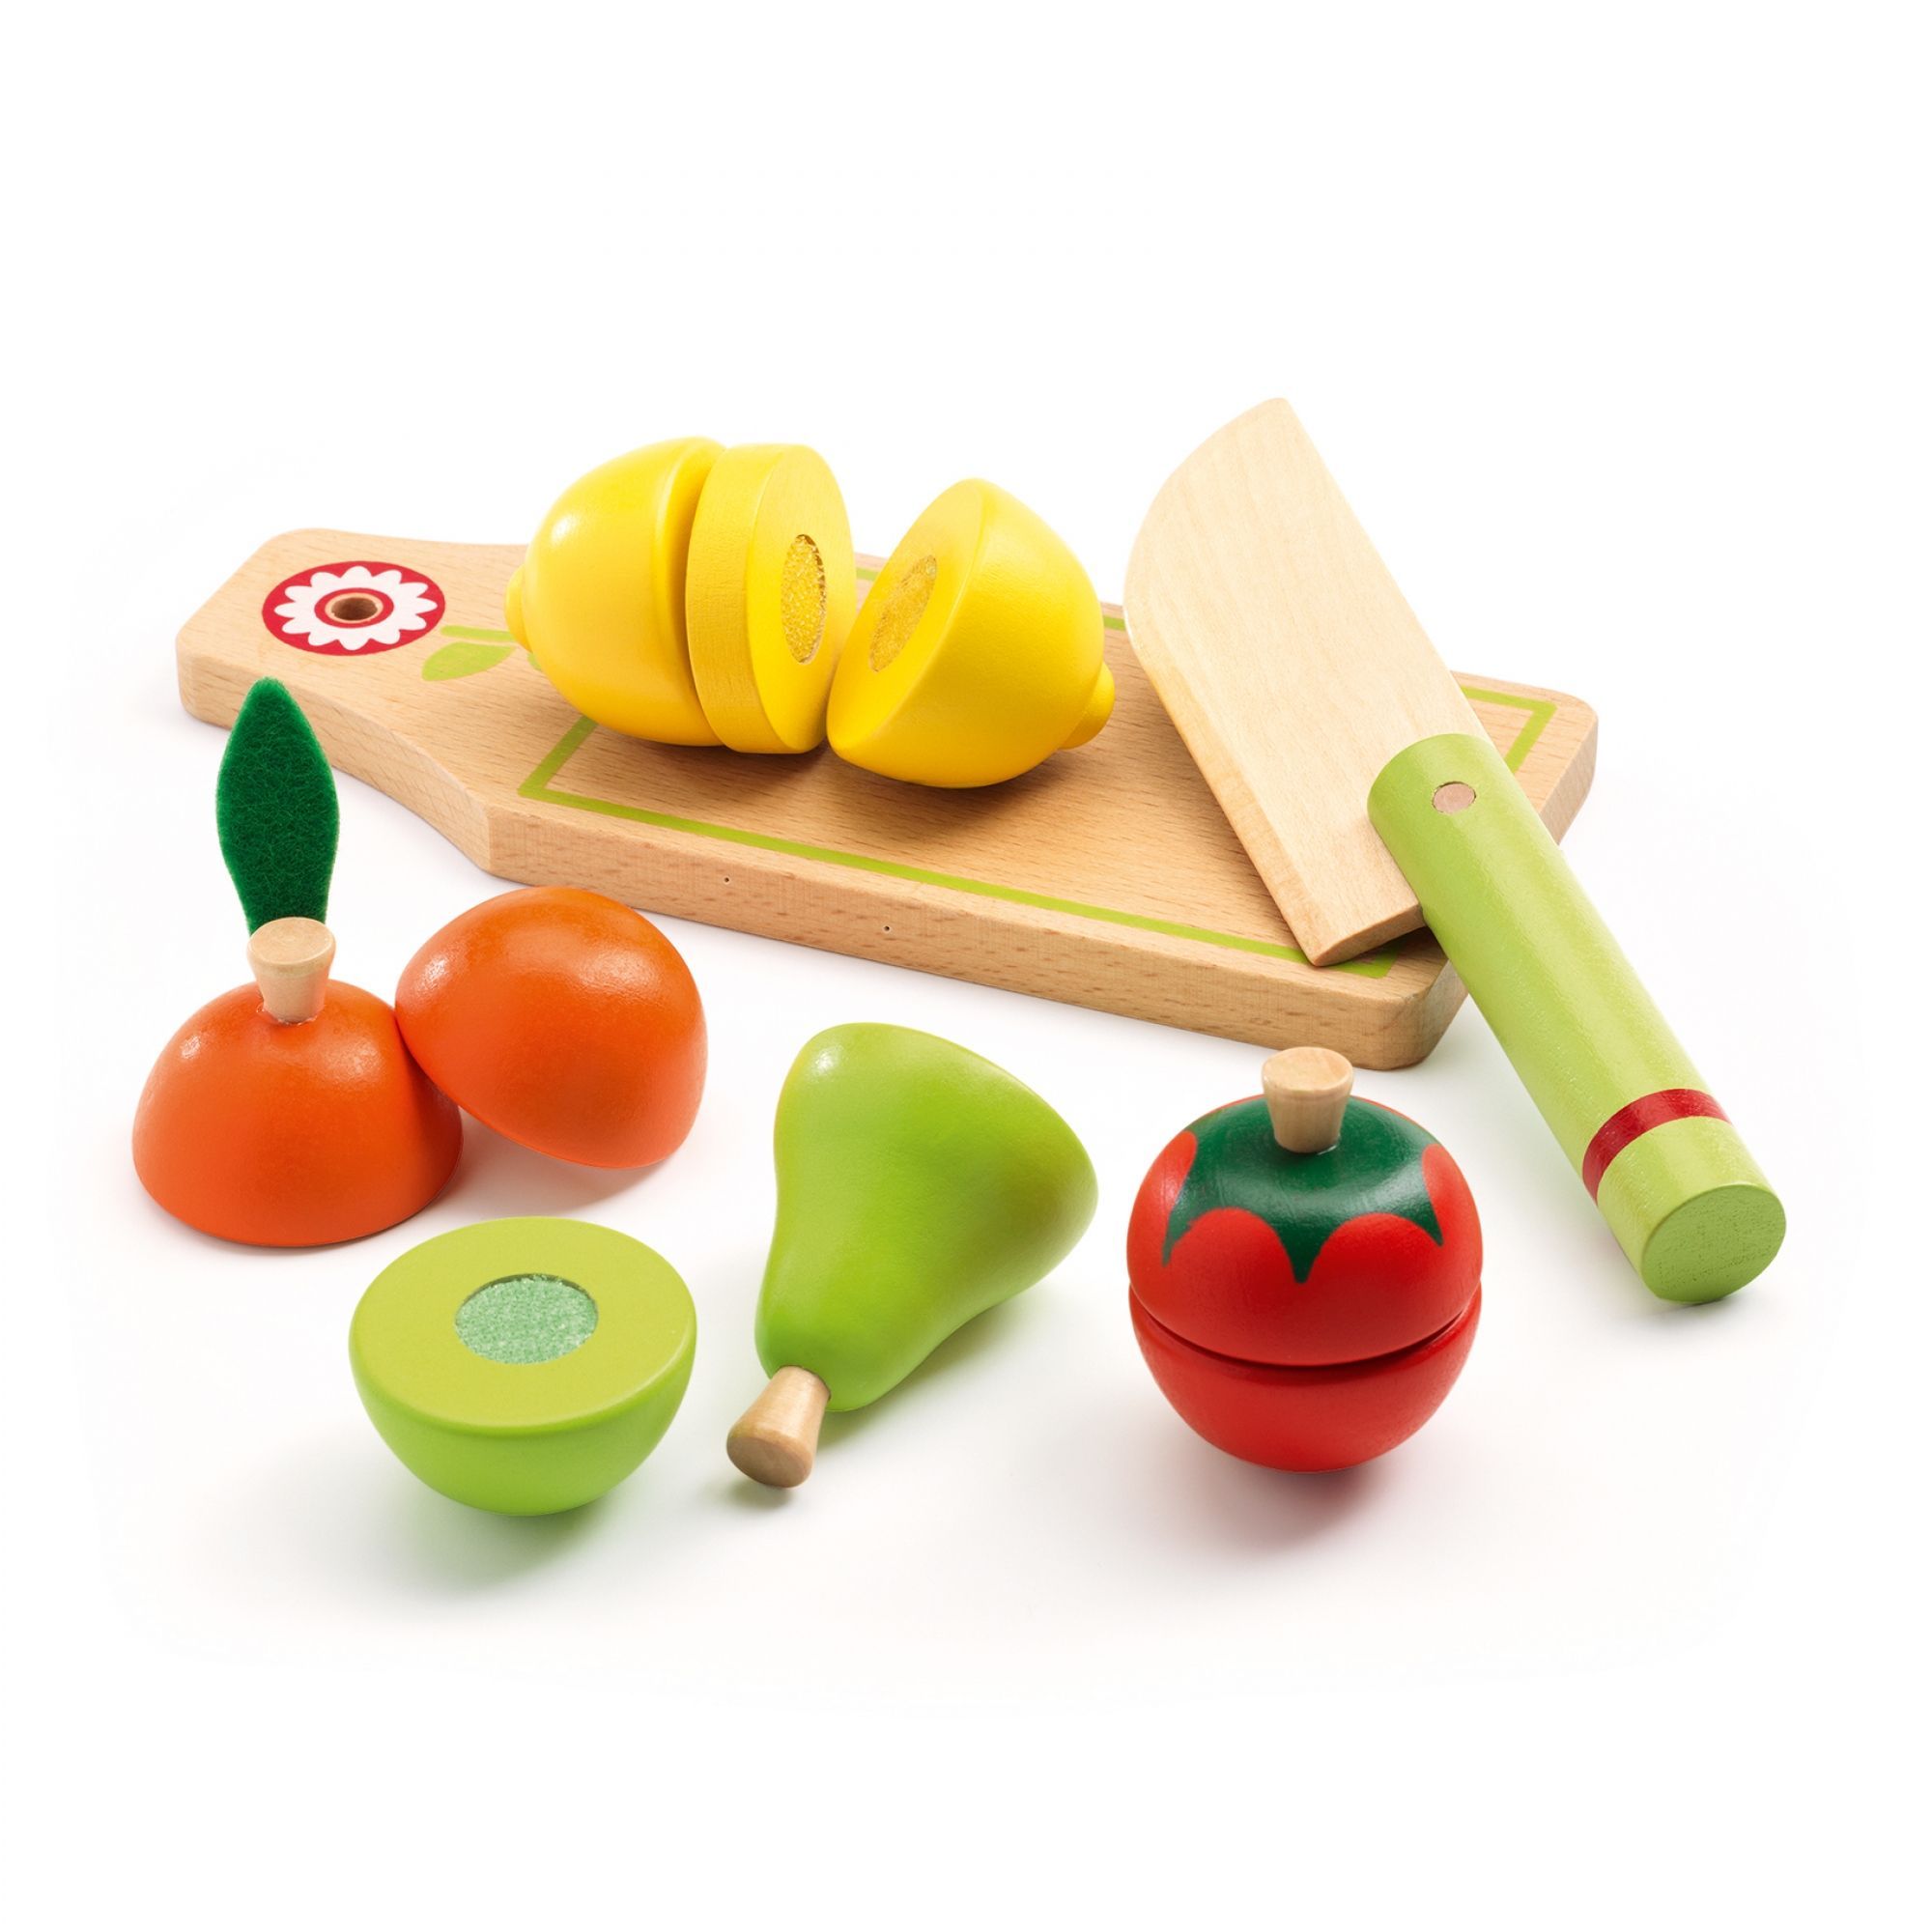 Coupe fruit - Ustensiles de découpe facile de vos fruits !